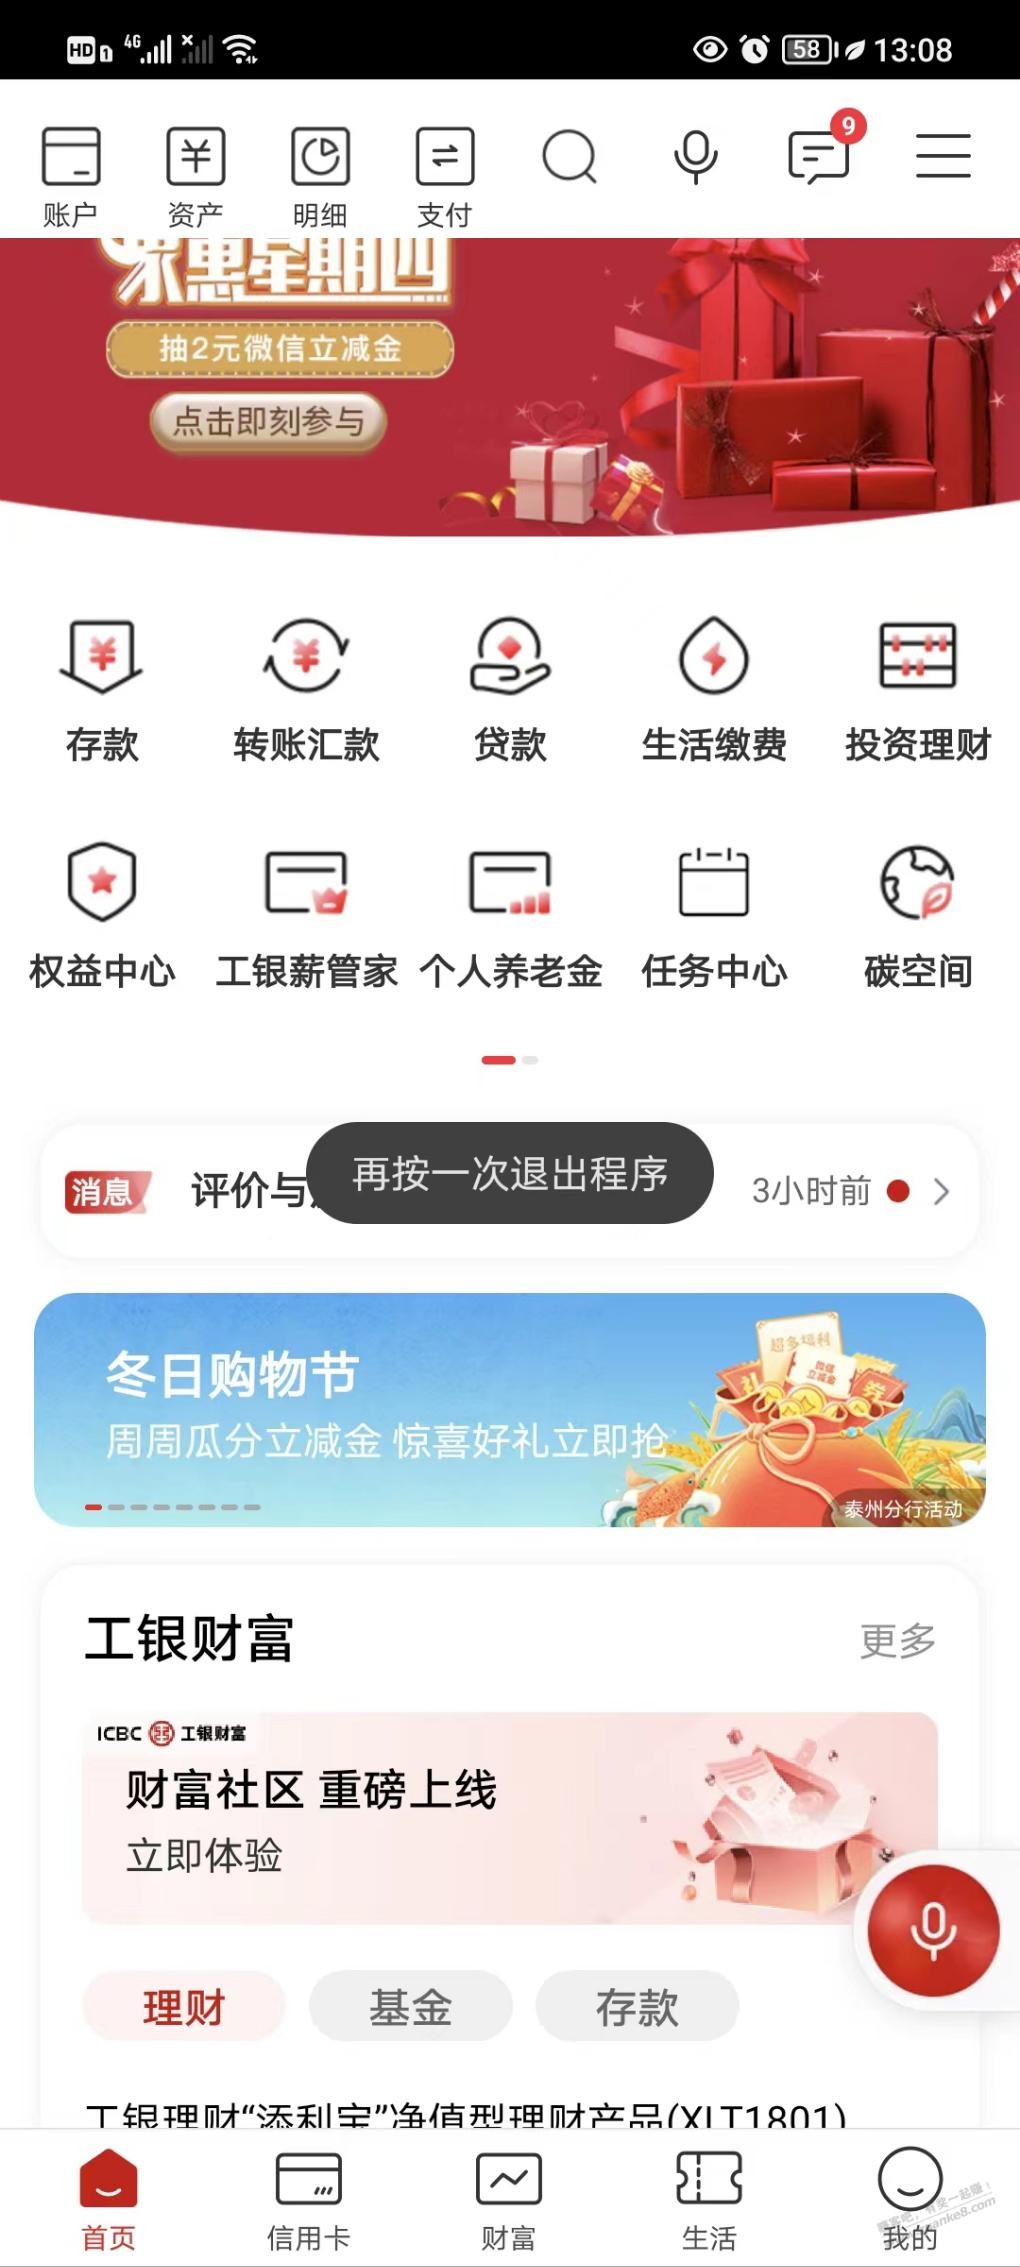 工行5.01-5不清楚和50-5 限江苏-惠小助(52huixz.com)